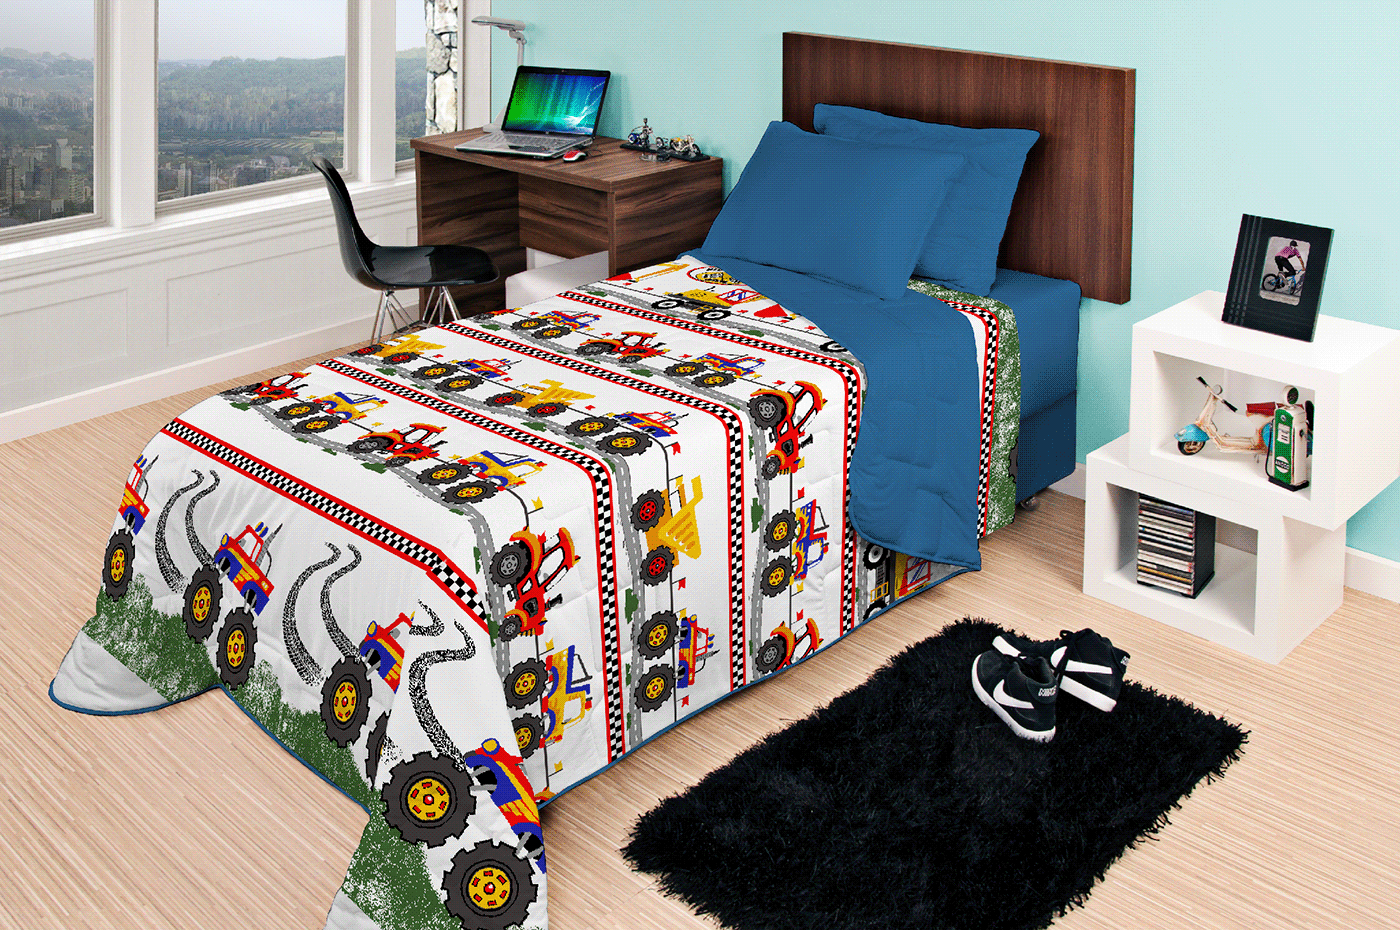 bedlinen homewares product design  3D textile surface design fabric textile design  Surface Pattern boys bedroom